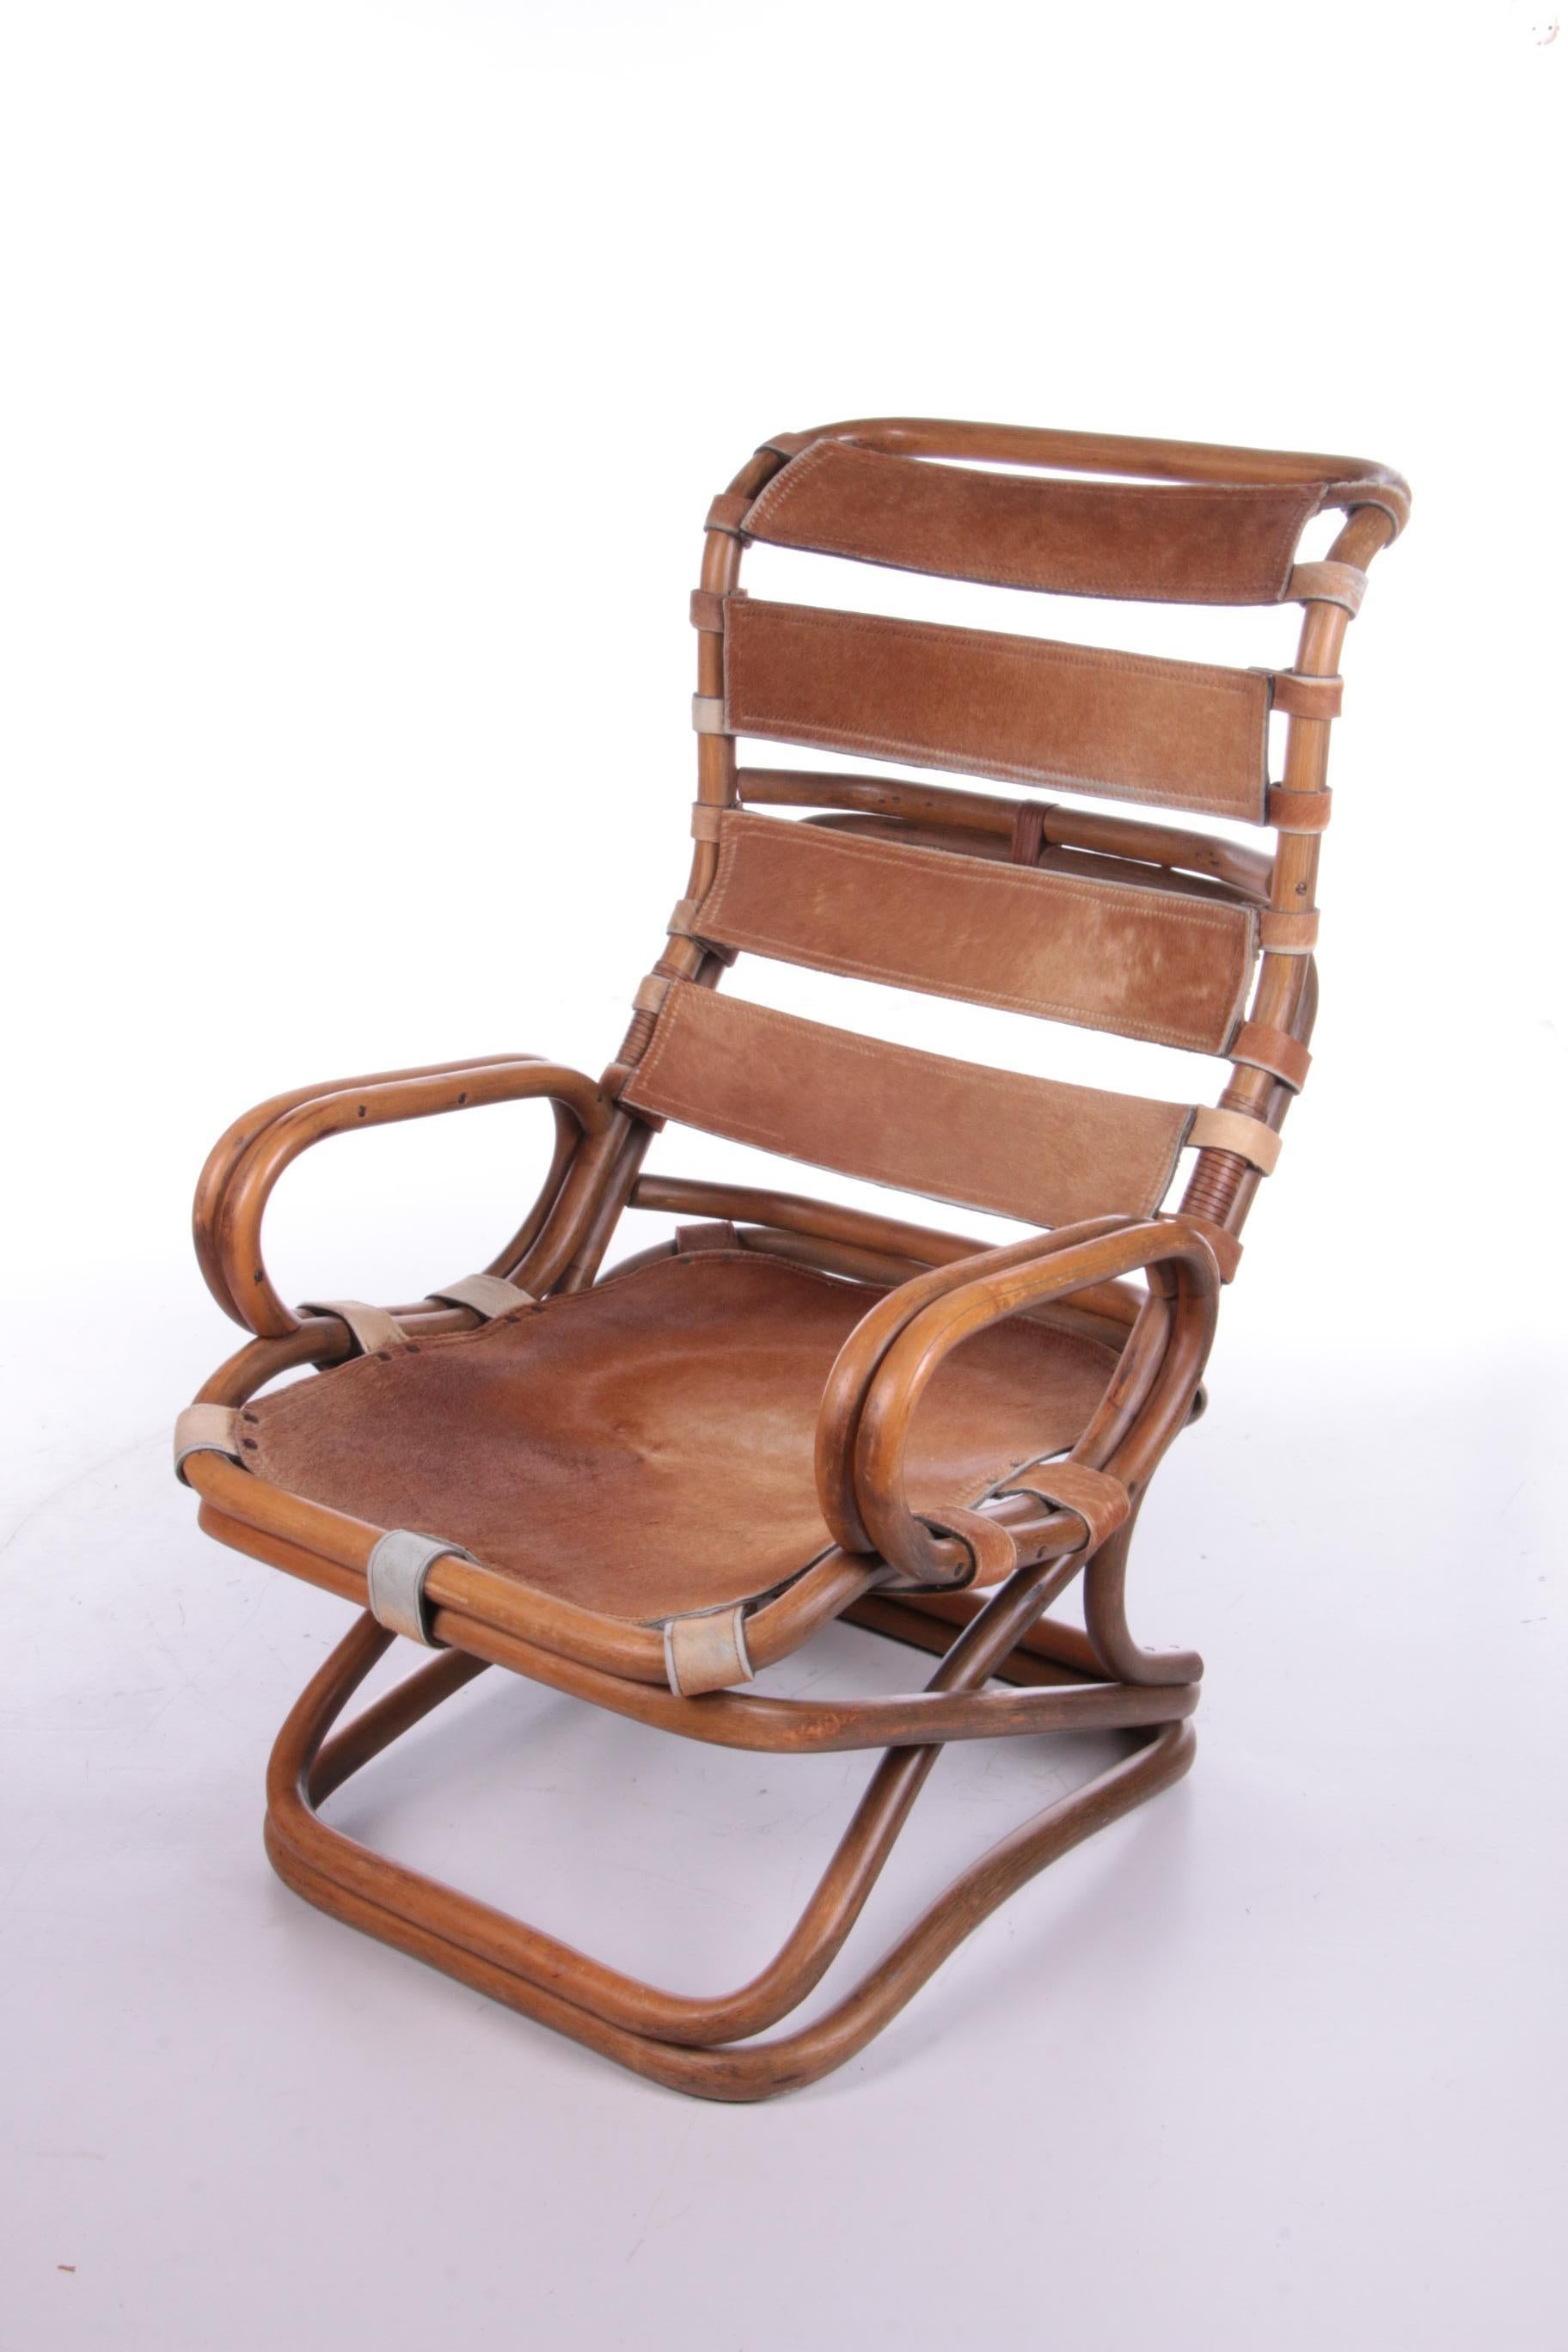 Chaise de relaxation Tito Agnoli en bambou et cuir, 1960.

Tito Agnoli a conçu ce fauteuil en rotin et cuir de cheval fabriqué par Pierantonio Bonacina, vers 1960.

Il s'agit d'un modèle italien et il n'en reste pas beaucoup.

Le cuir est un cuir de